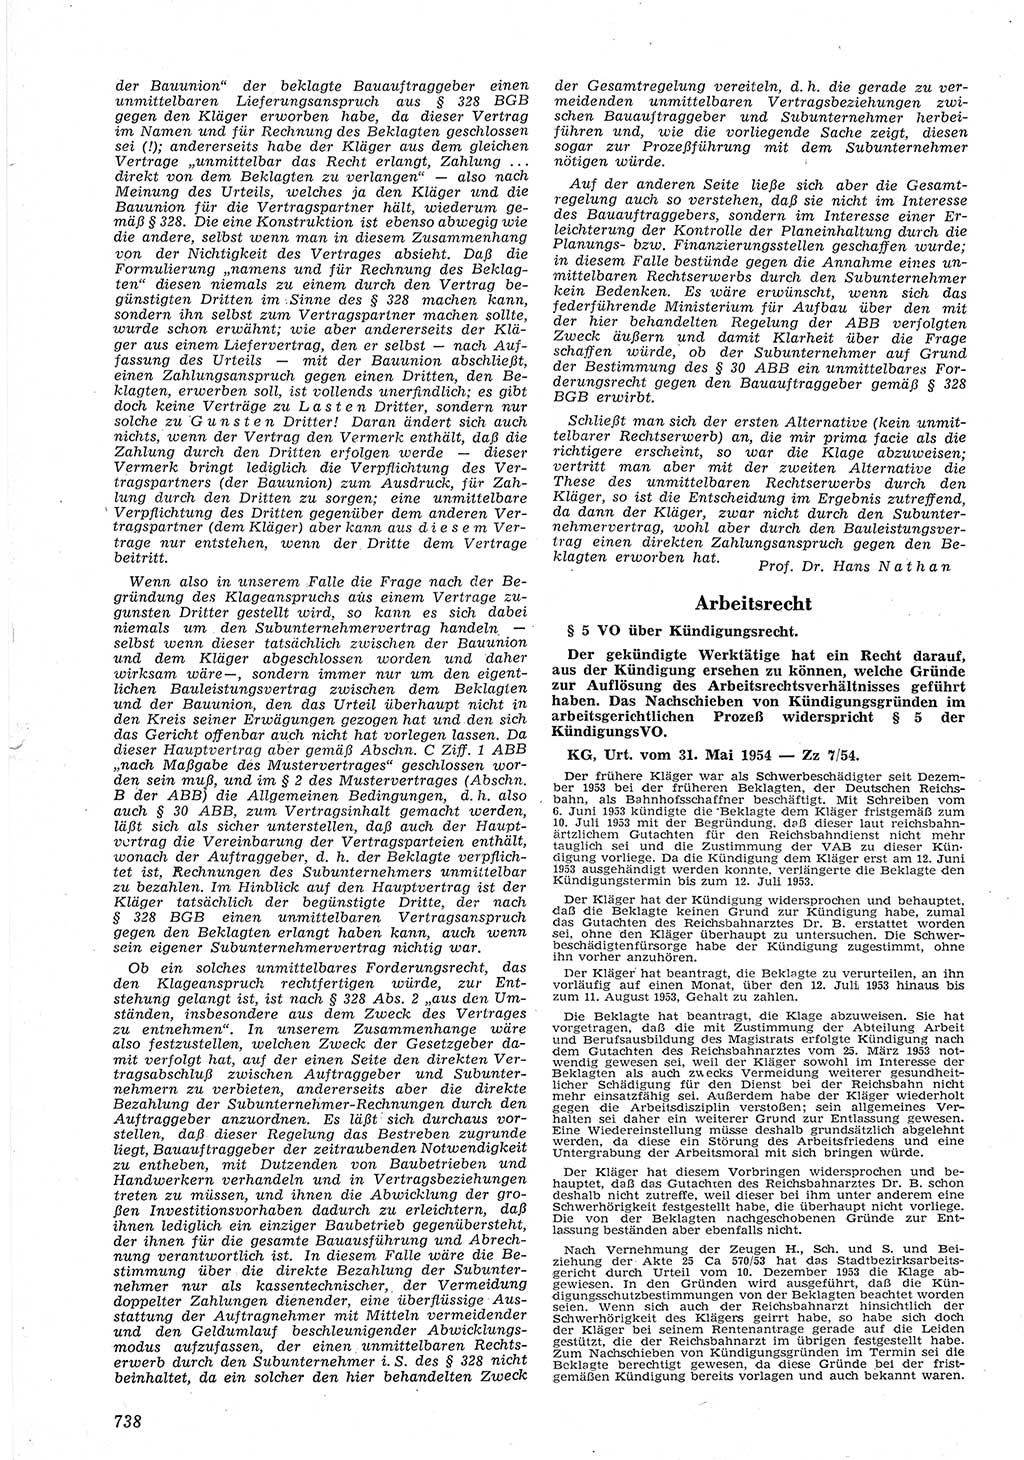 Neue Justiz (NJ), Zeitschrift für Recht und Rechtswissenschaft [Deutsche Demokratische Republik (DDR)], 8. Jahrgang 1954, Seite 738 (NJ DDR 1954, S. 738)